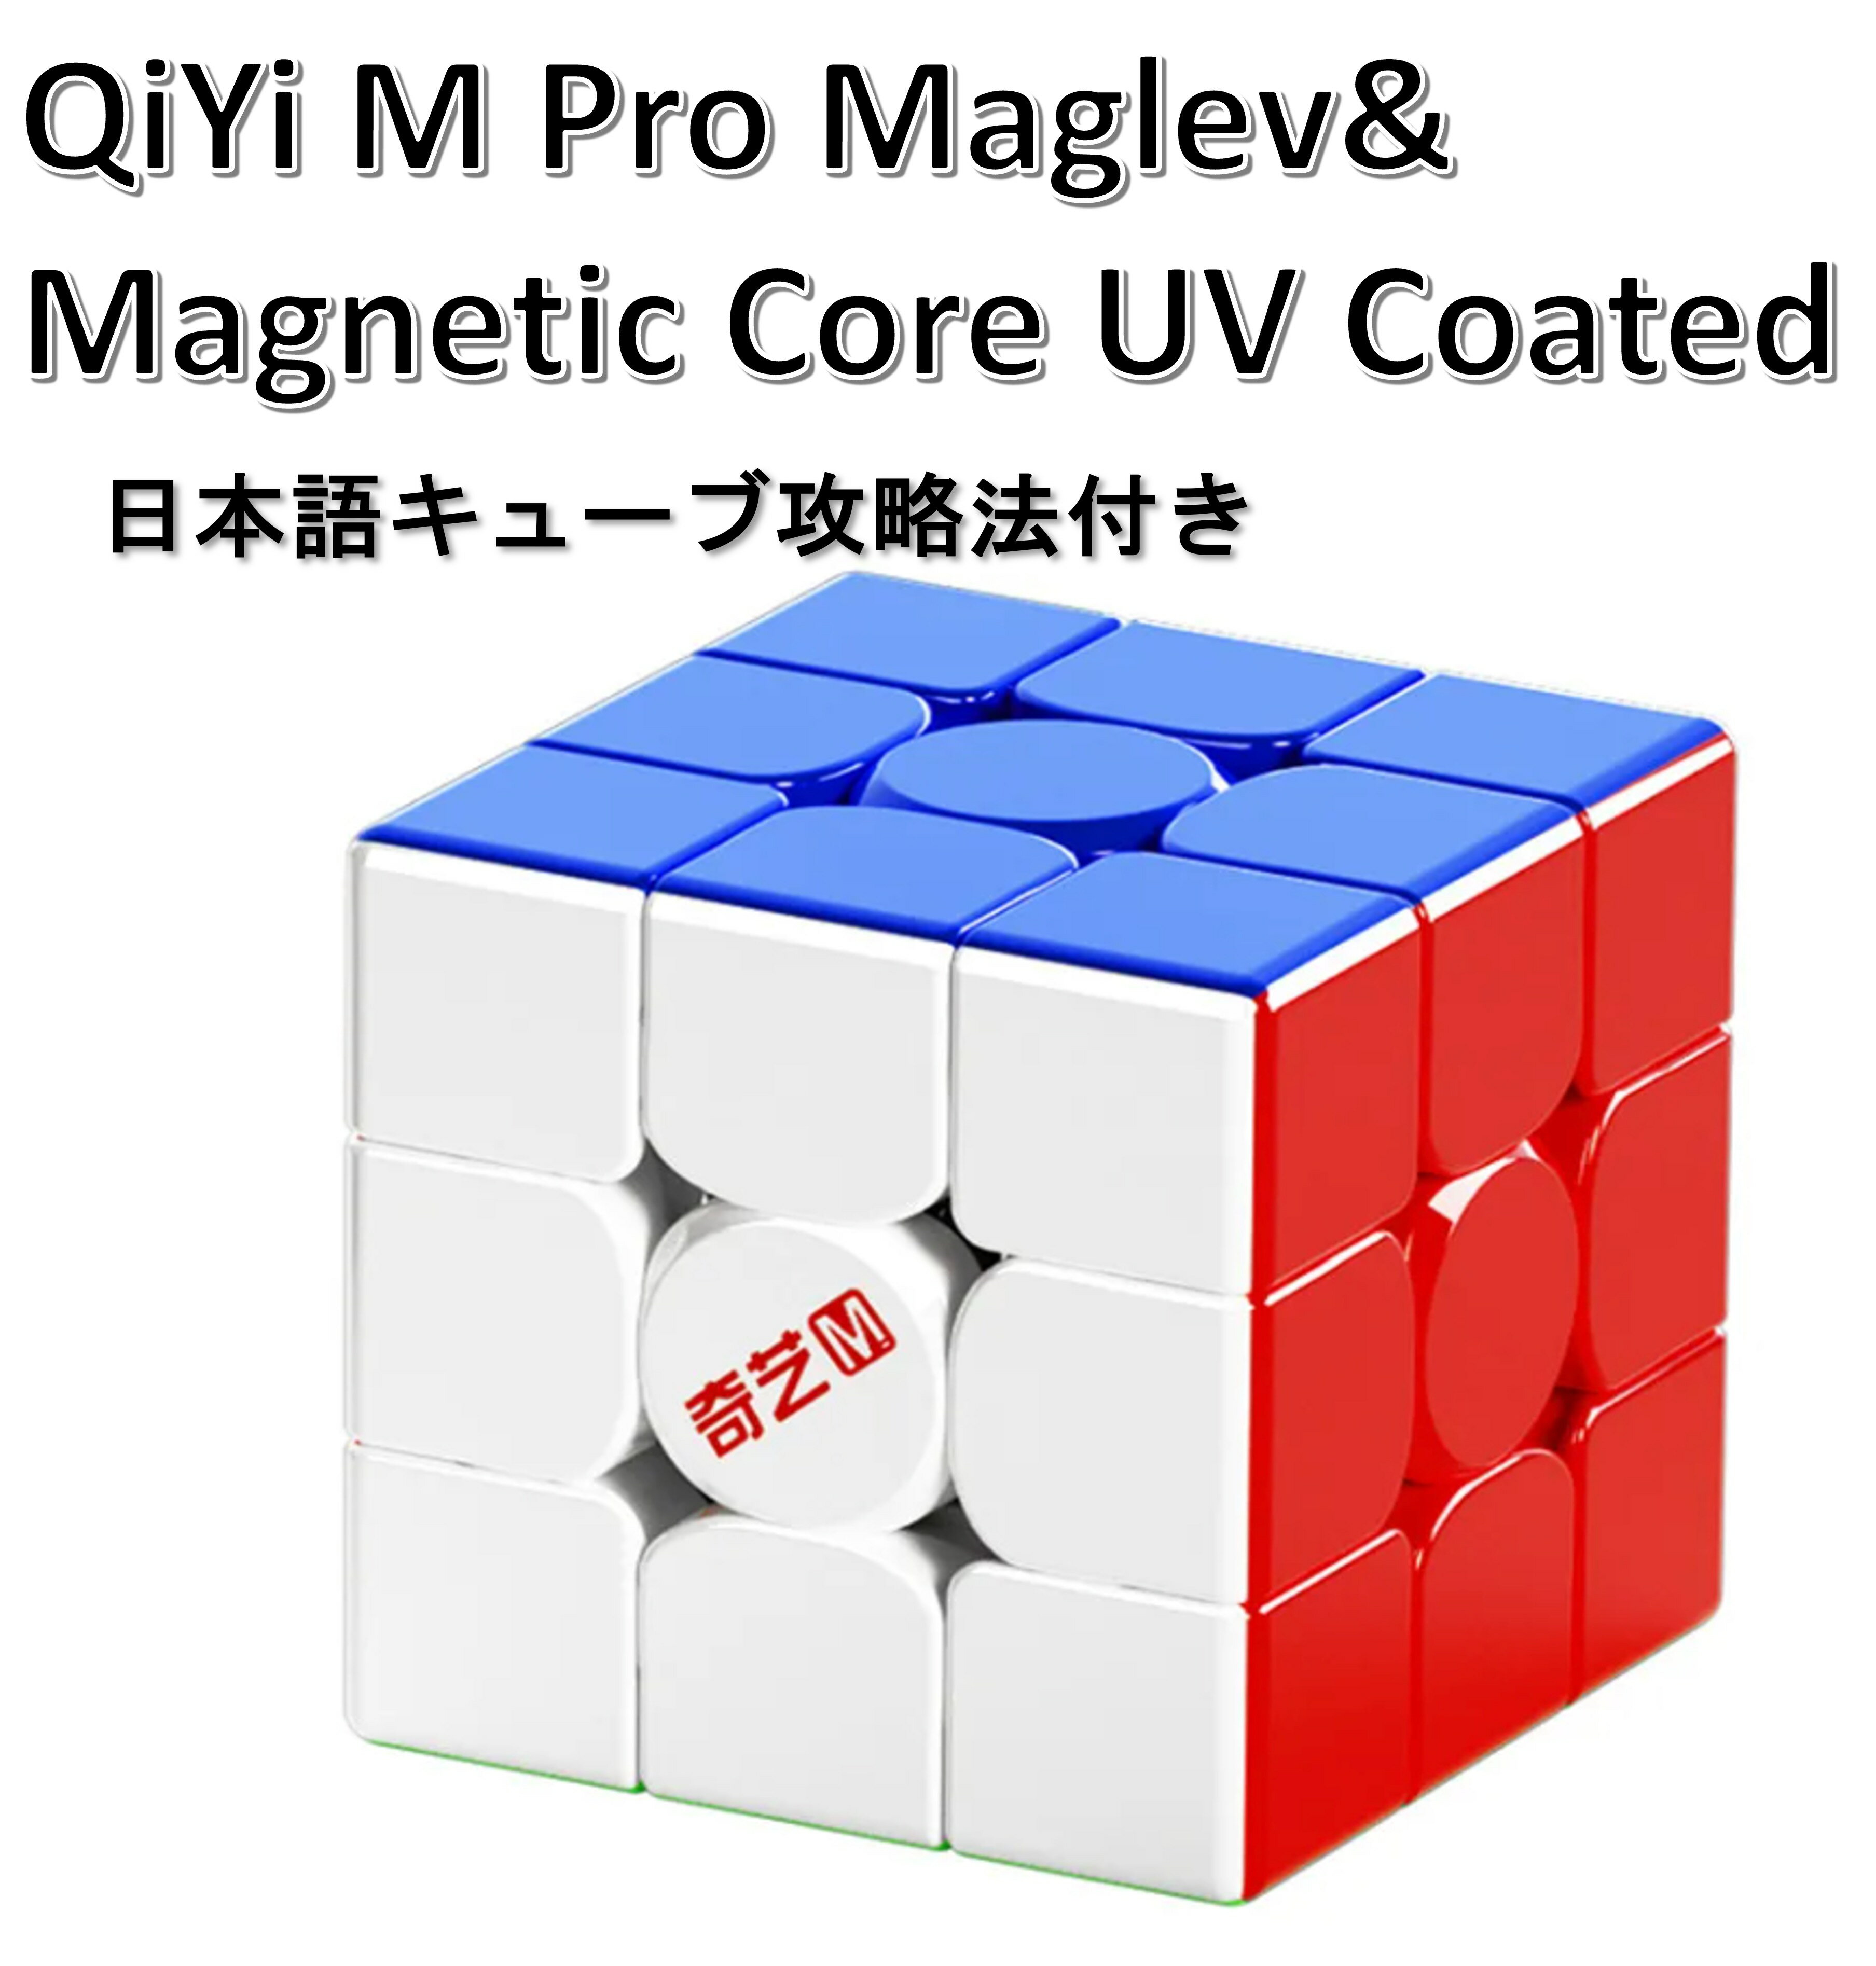 日本語攻略法付き 安心の保証付き 正規販売店 Qiyi M PRO Maglev & Magnetic Core UV Coated 磁石搭載 3x3x3キューブ